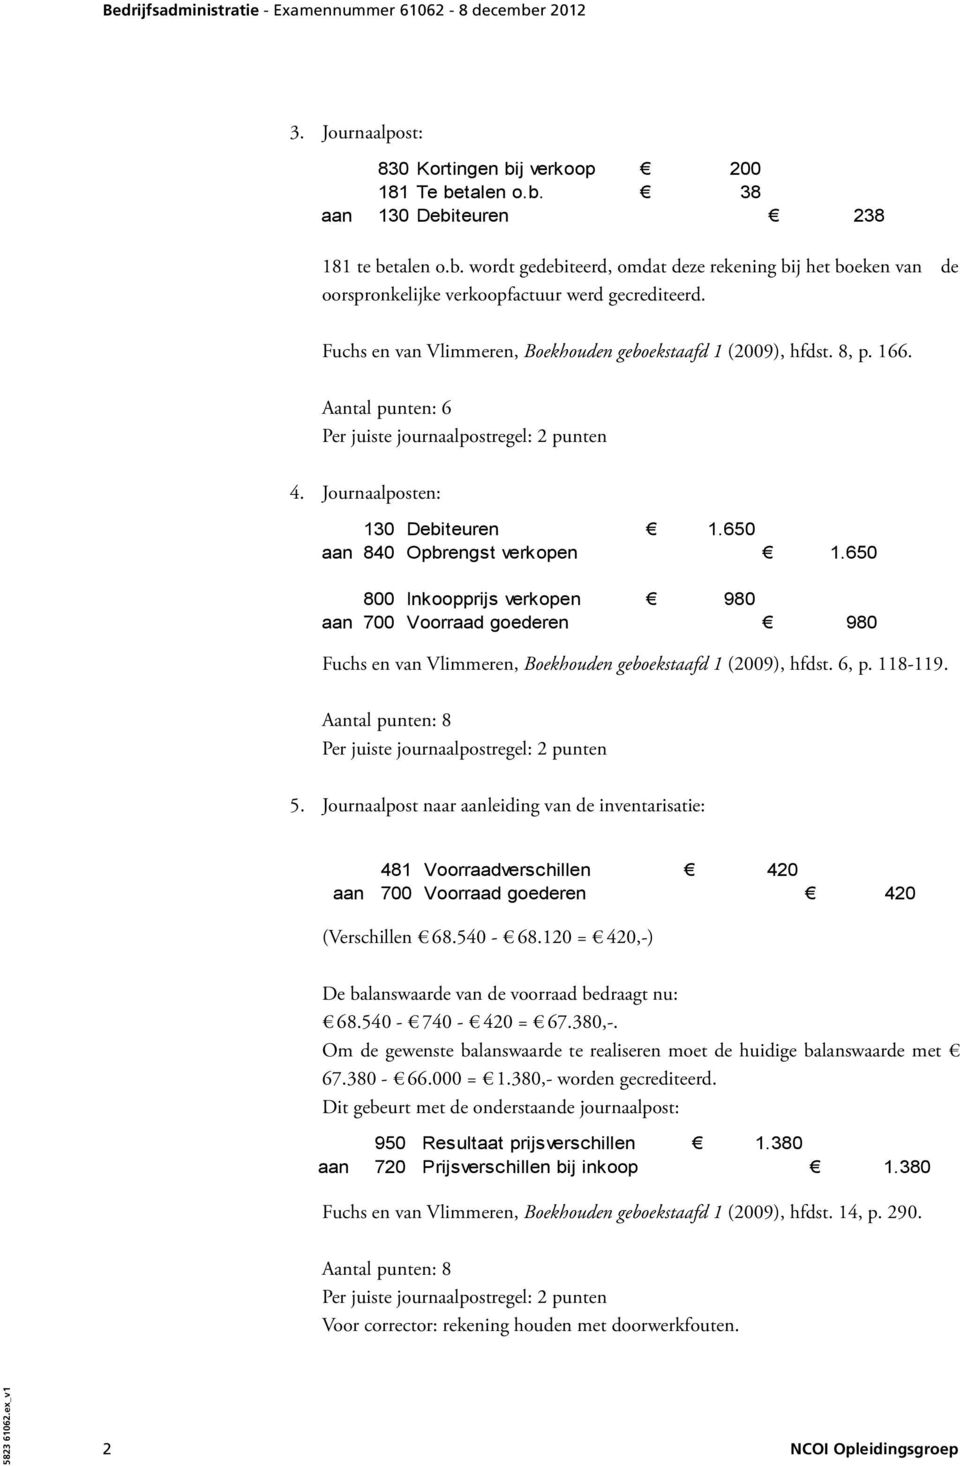 650 800 Inkoopprijs verkopen 980 aan 700 Voorraad goederen 980 Fuchs en van Vlimmeren, Boekhouden geboekstaafd 1 (2009), hfdst. 6, p. 118-119. 5.